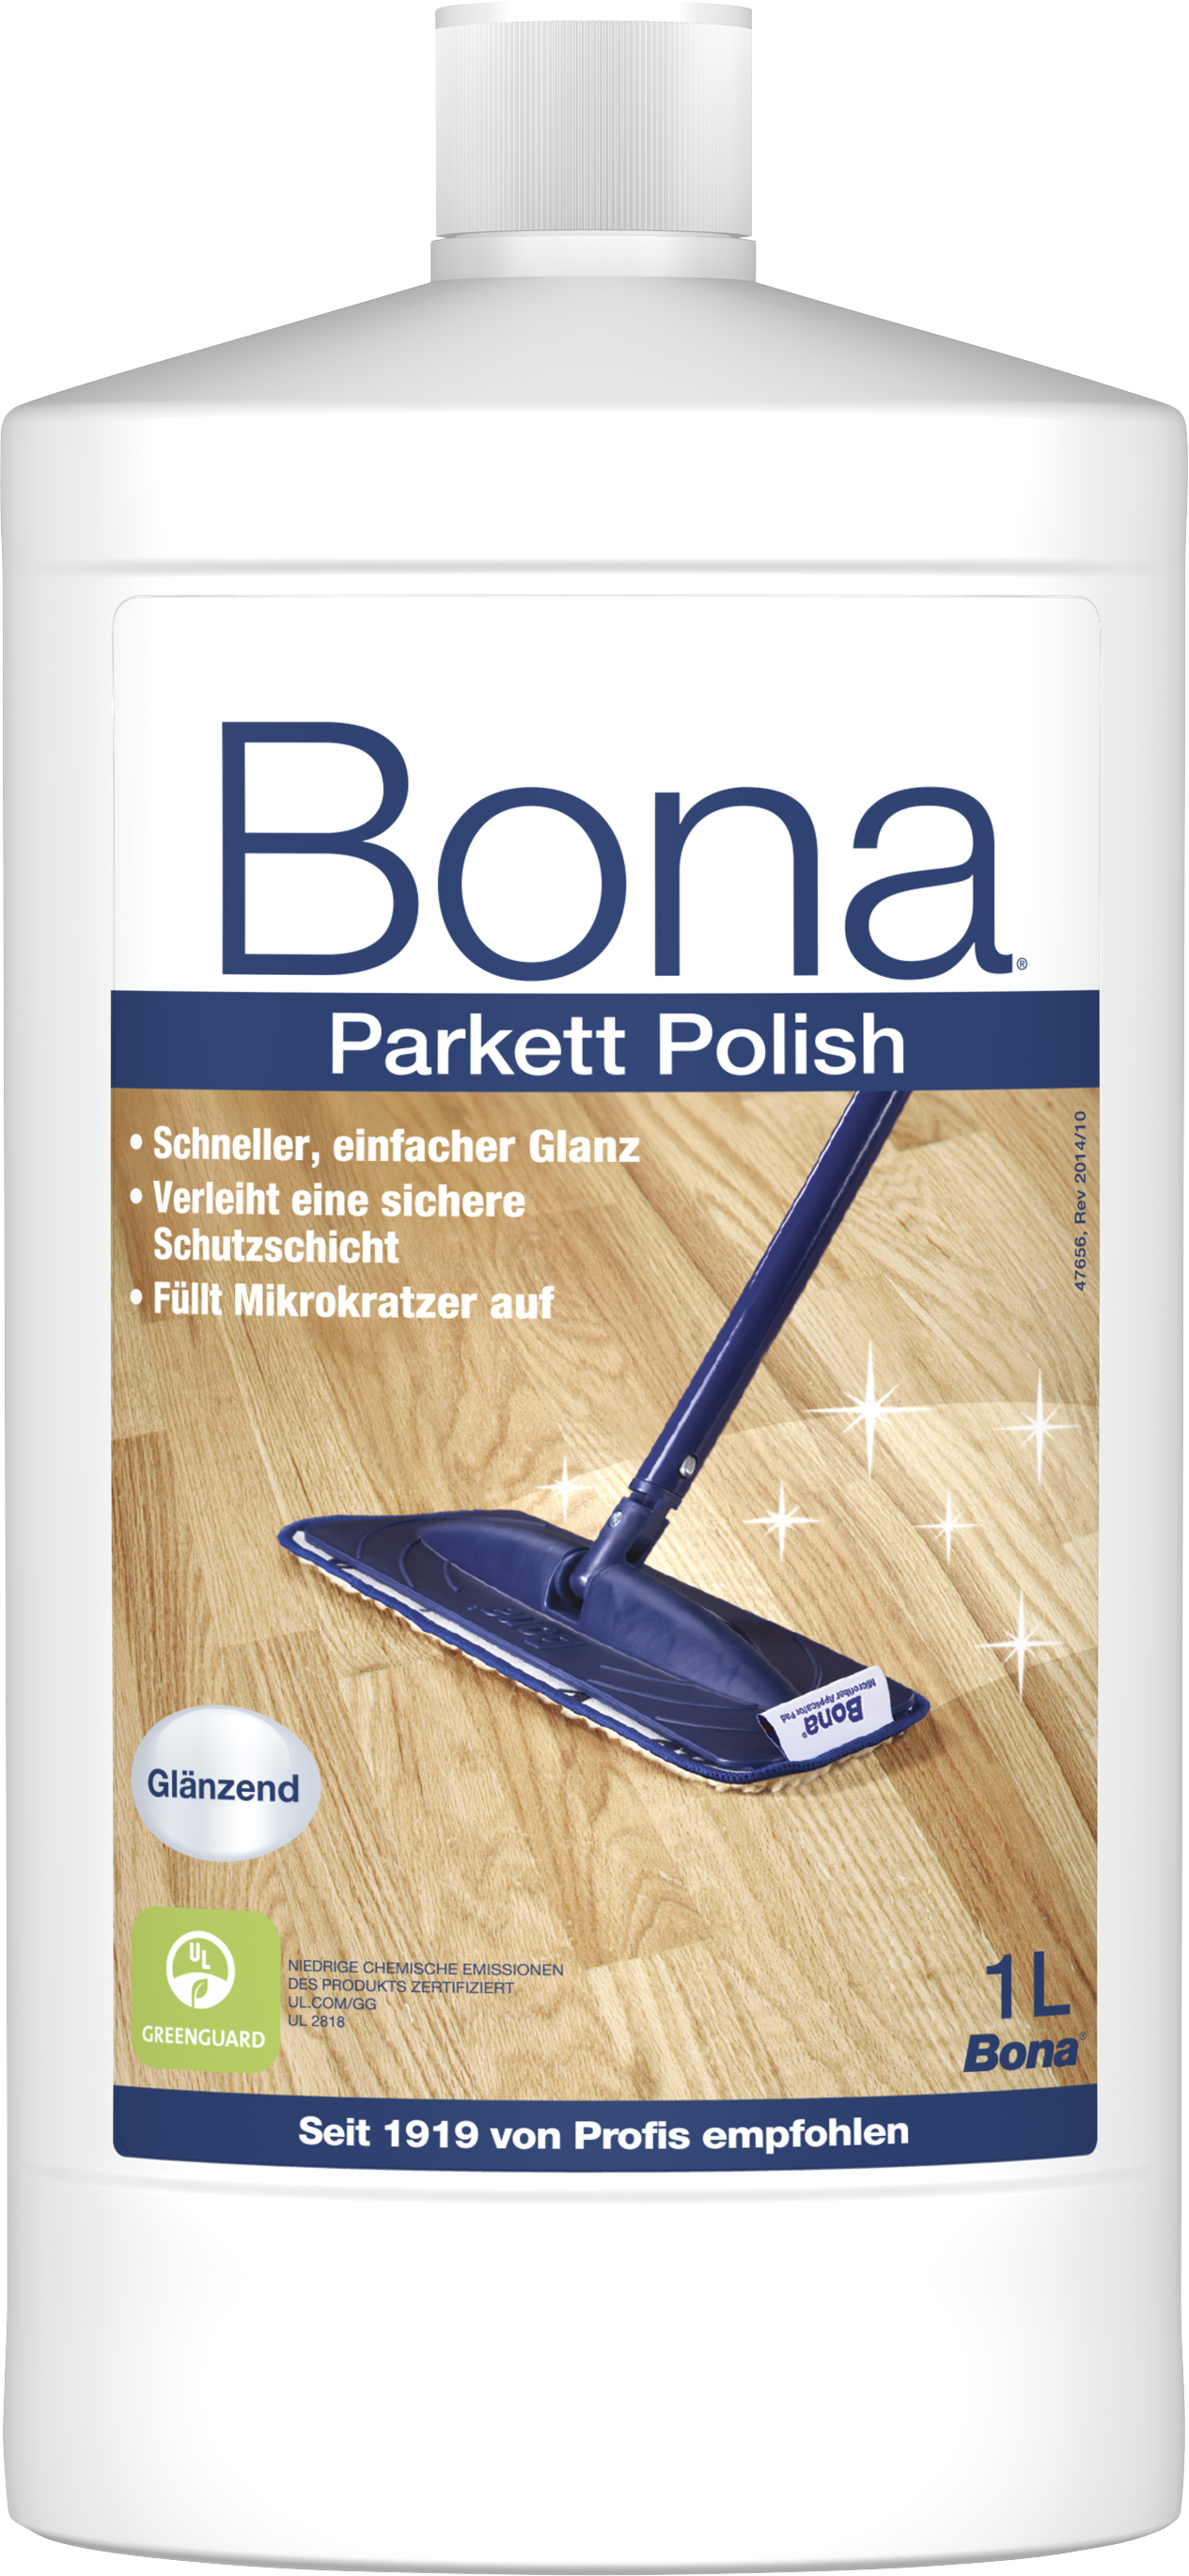 Bona Parkett Polish glänzend, 1 L